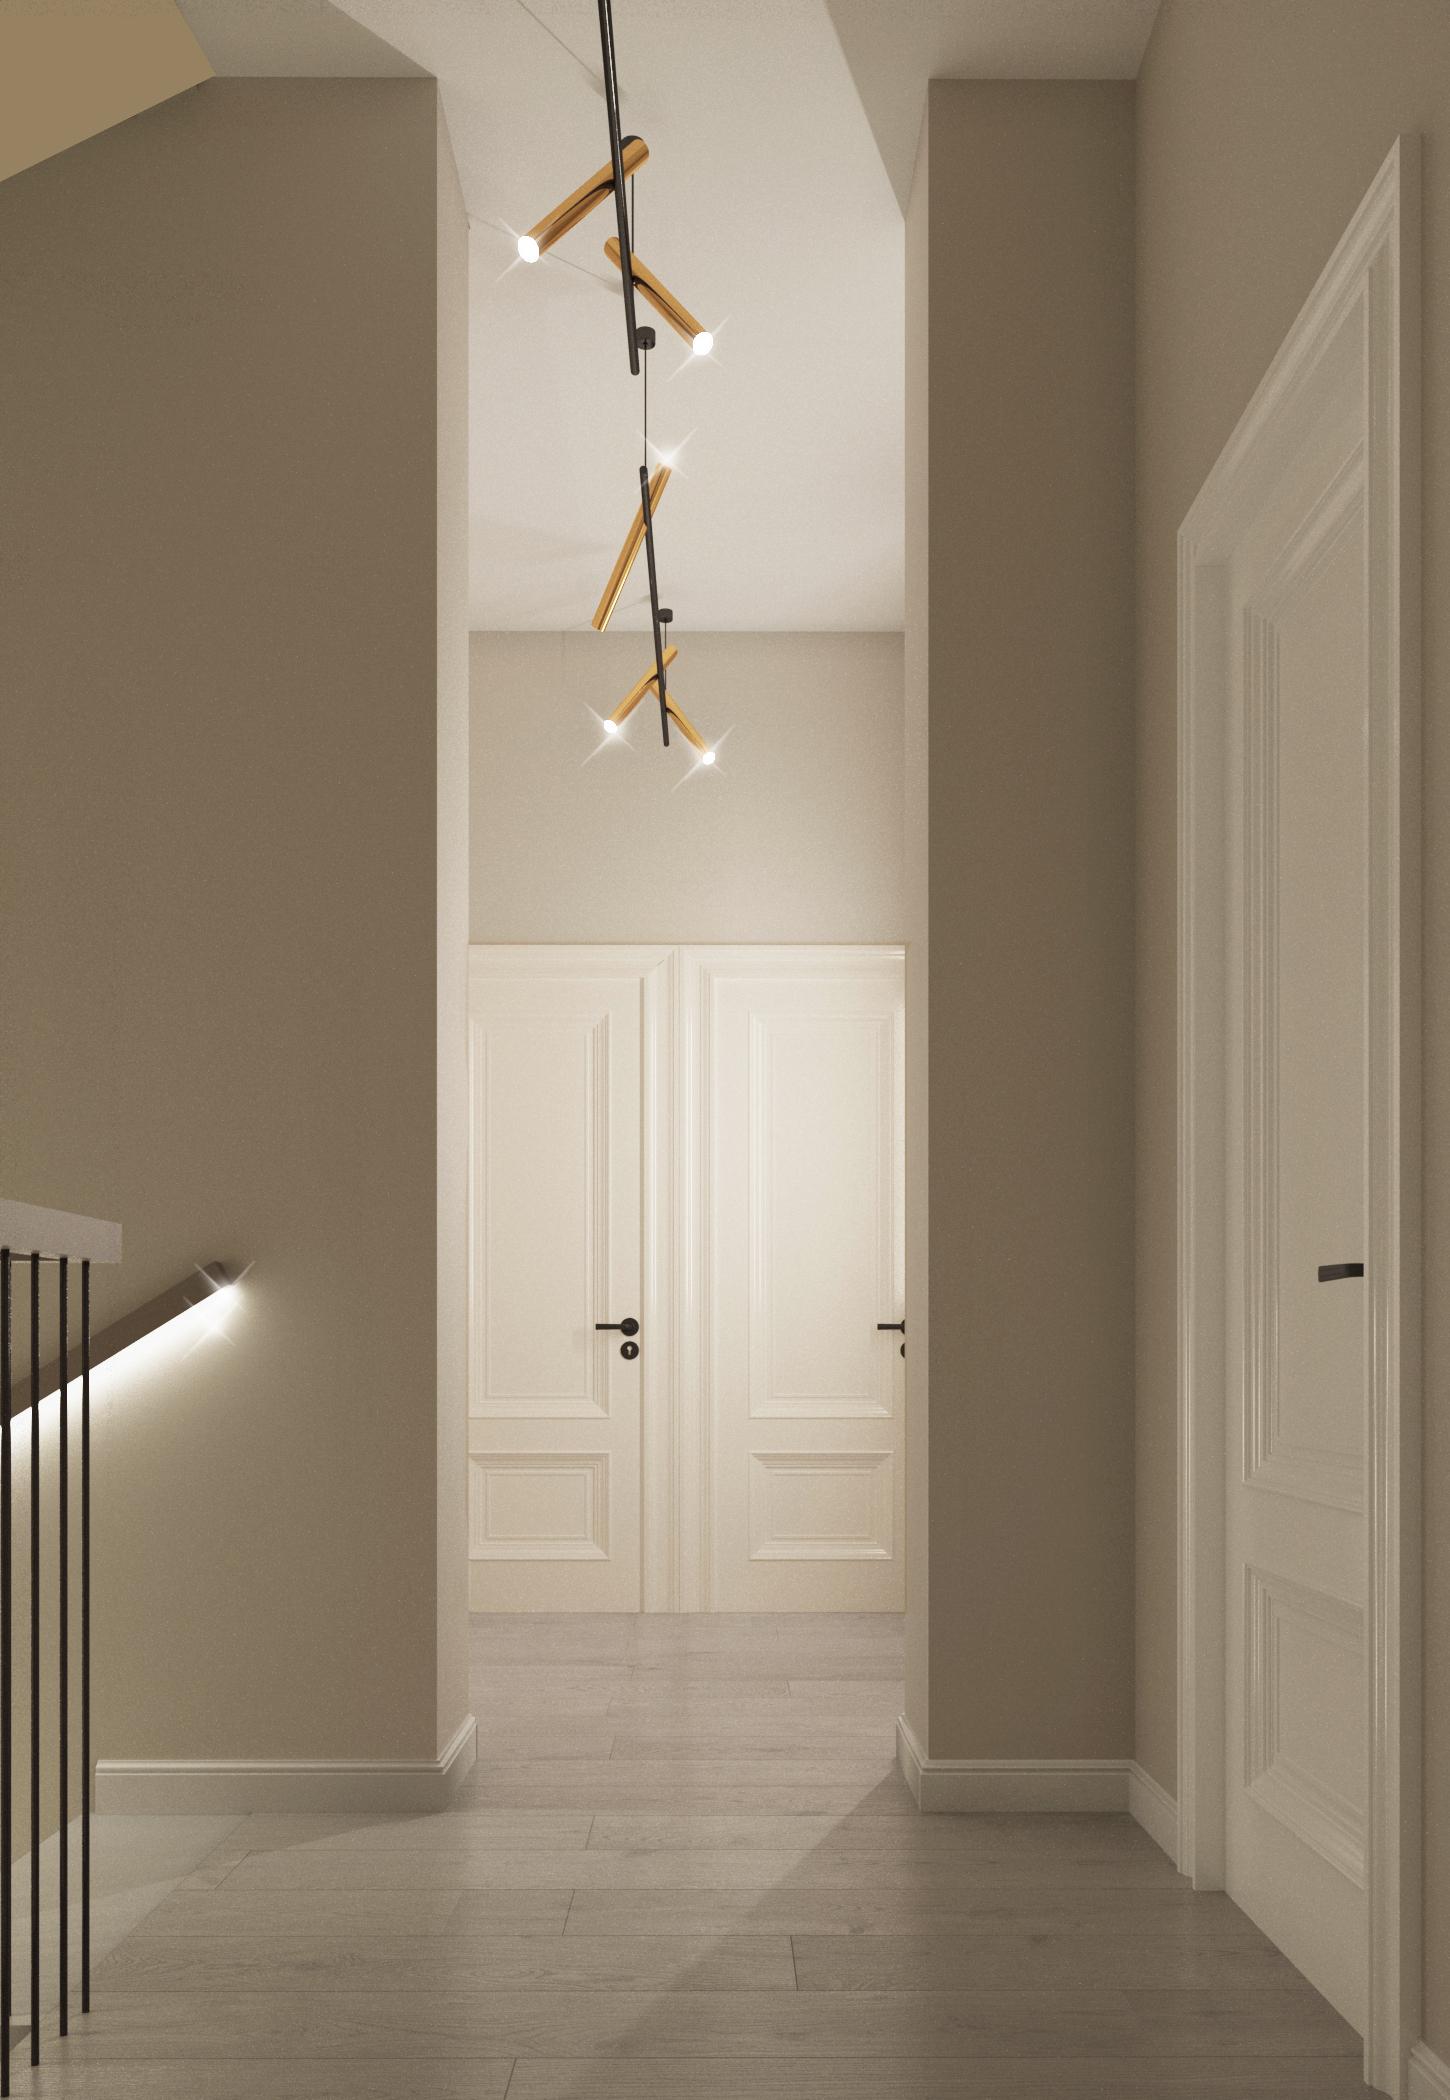 Интерьер коридора с рейками с подсветкой, подсветкой настенной и подсветкой светодиодной